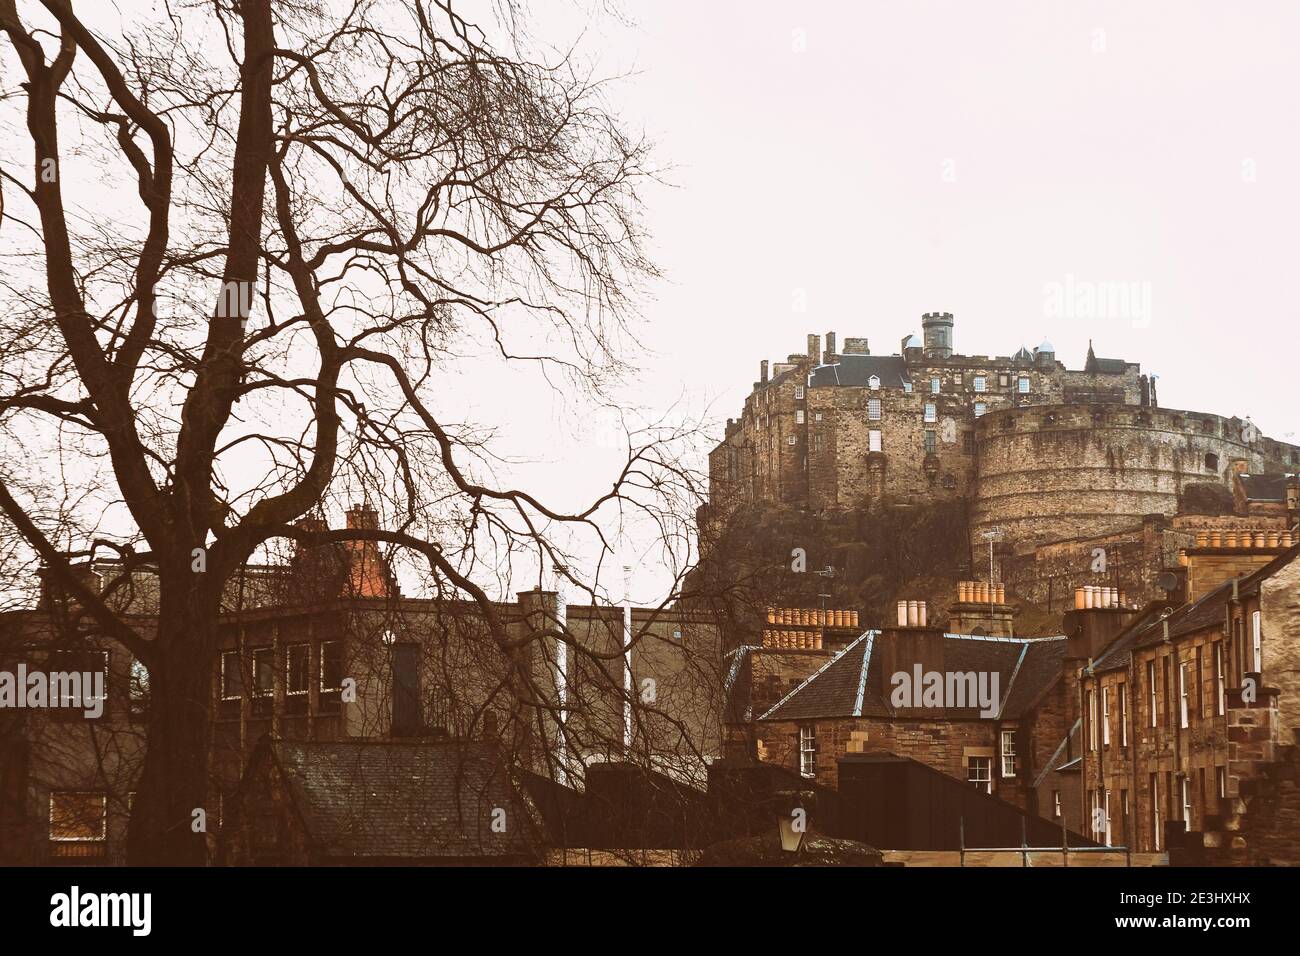 Vista del castillo de Edimburgo desde abajo con un gran árbol negro la izquierda y los edificios en primer plano Foto de stock